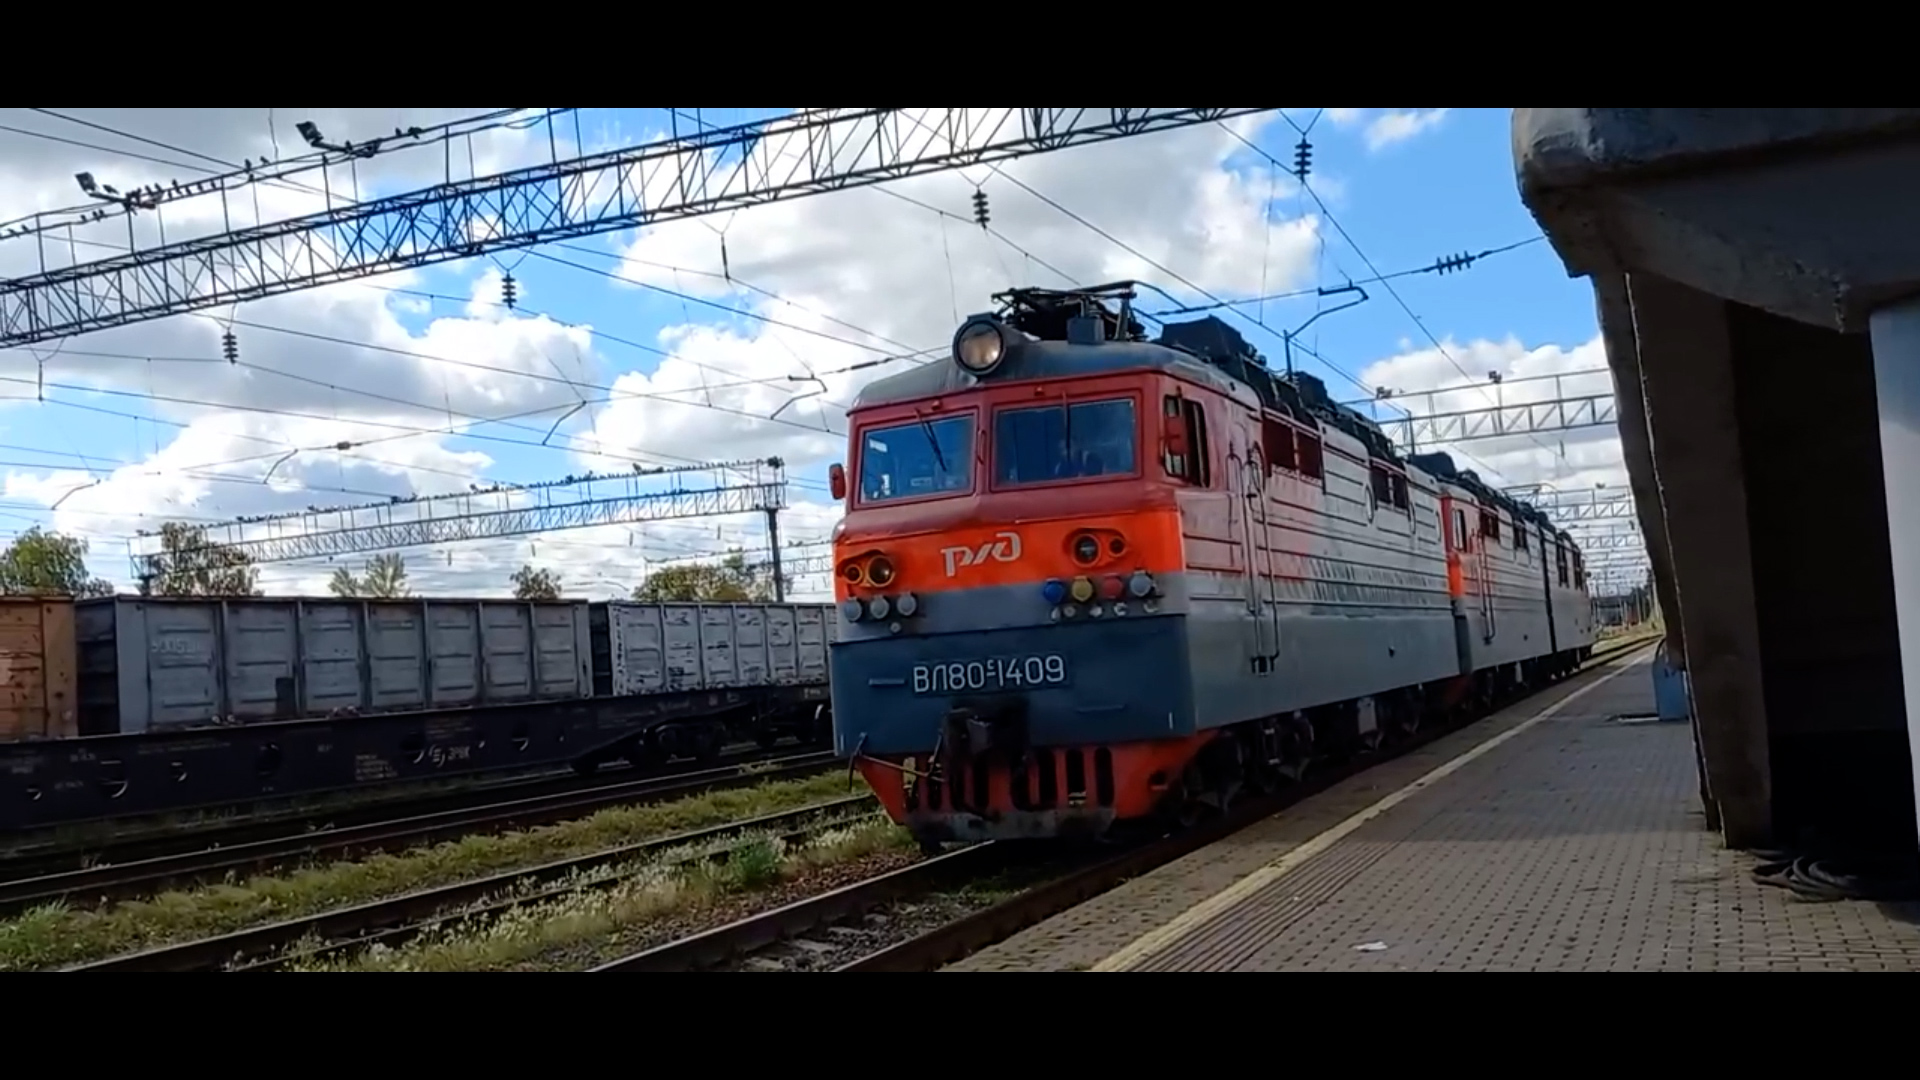 Железная дорога. Электровоз ВЛ80С-1409Б/2185 на станции Агрыз.